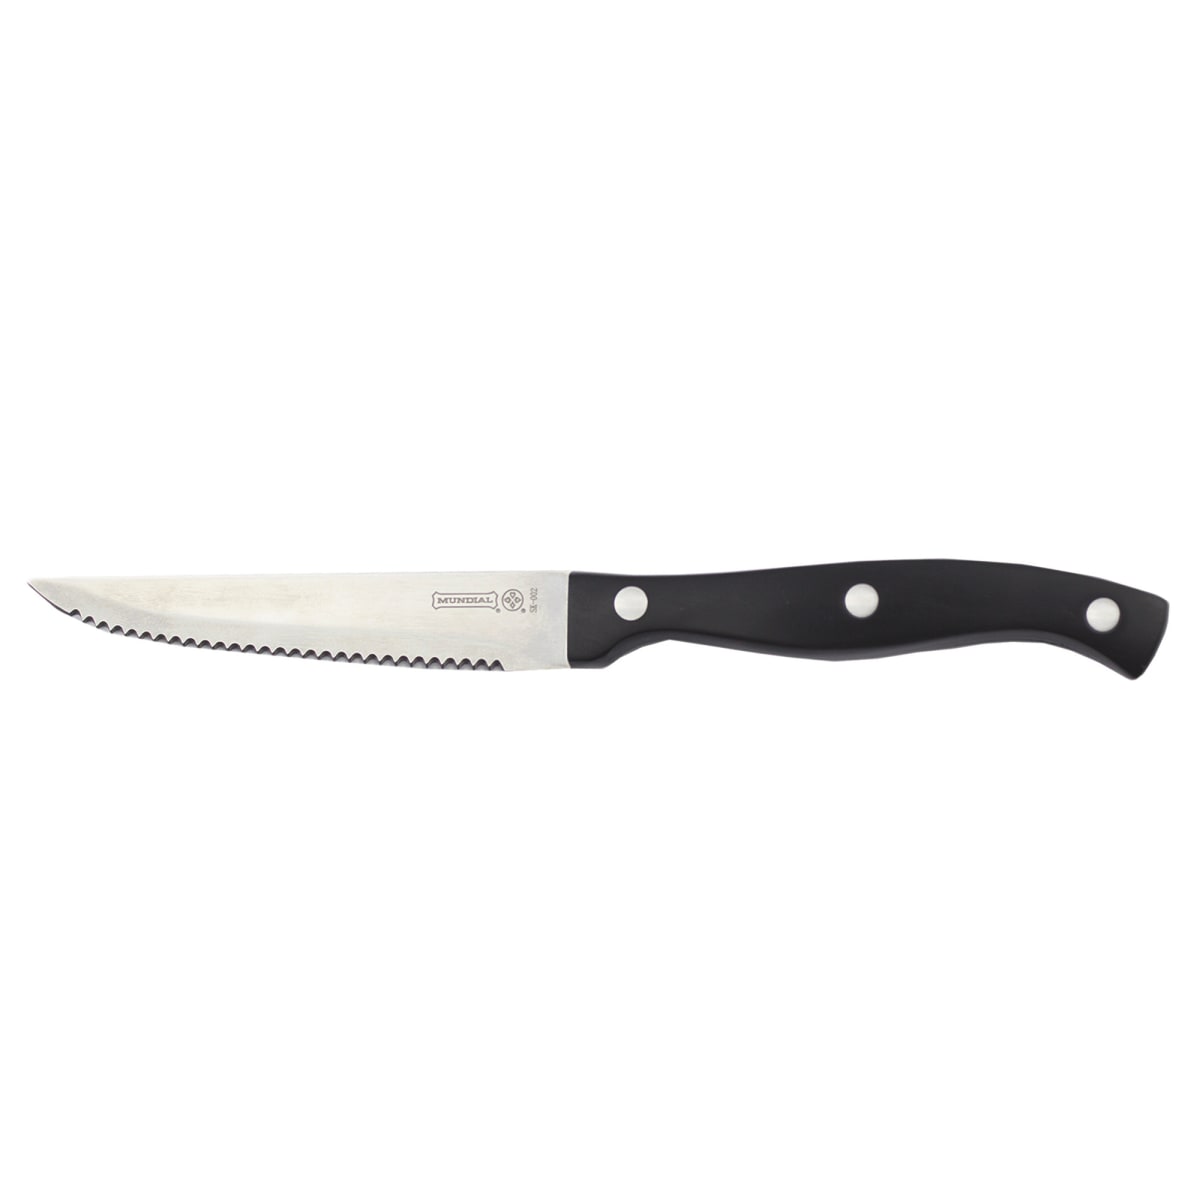 Mundial 4.25 Serrated Steak Knife, Black Zytel Handles - KnifeCenter -  SK-002